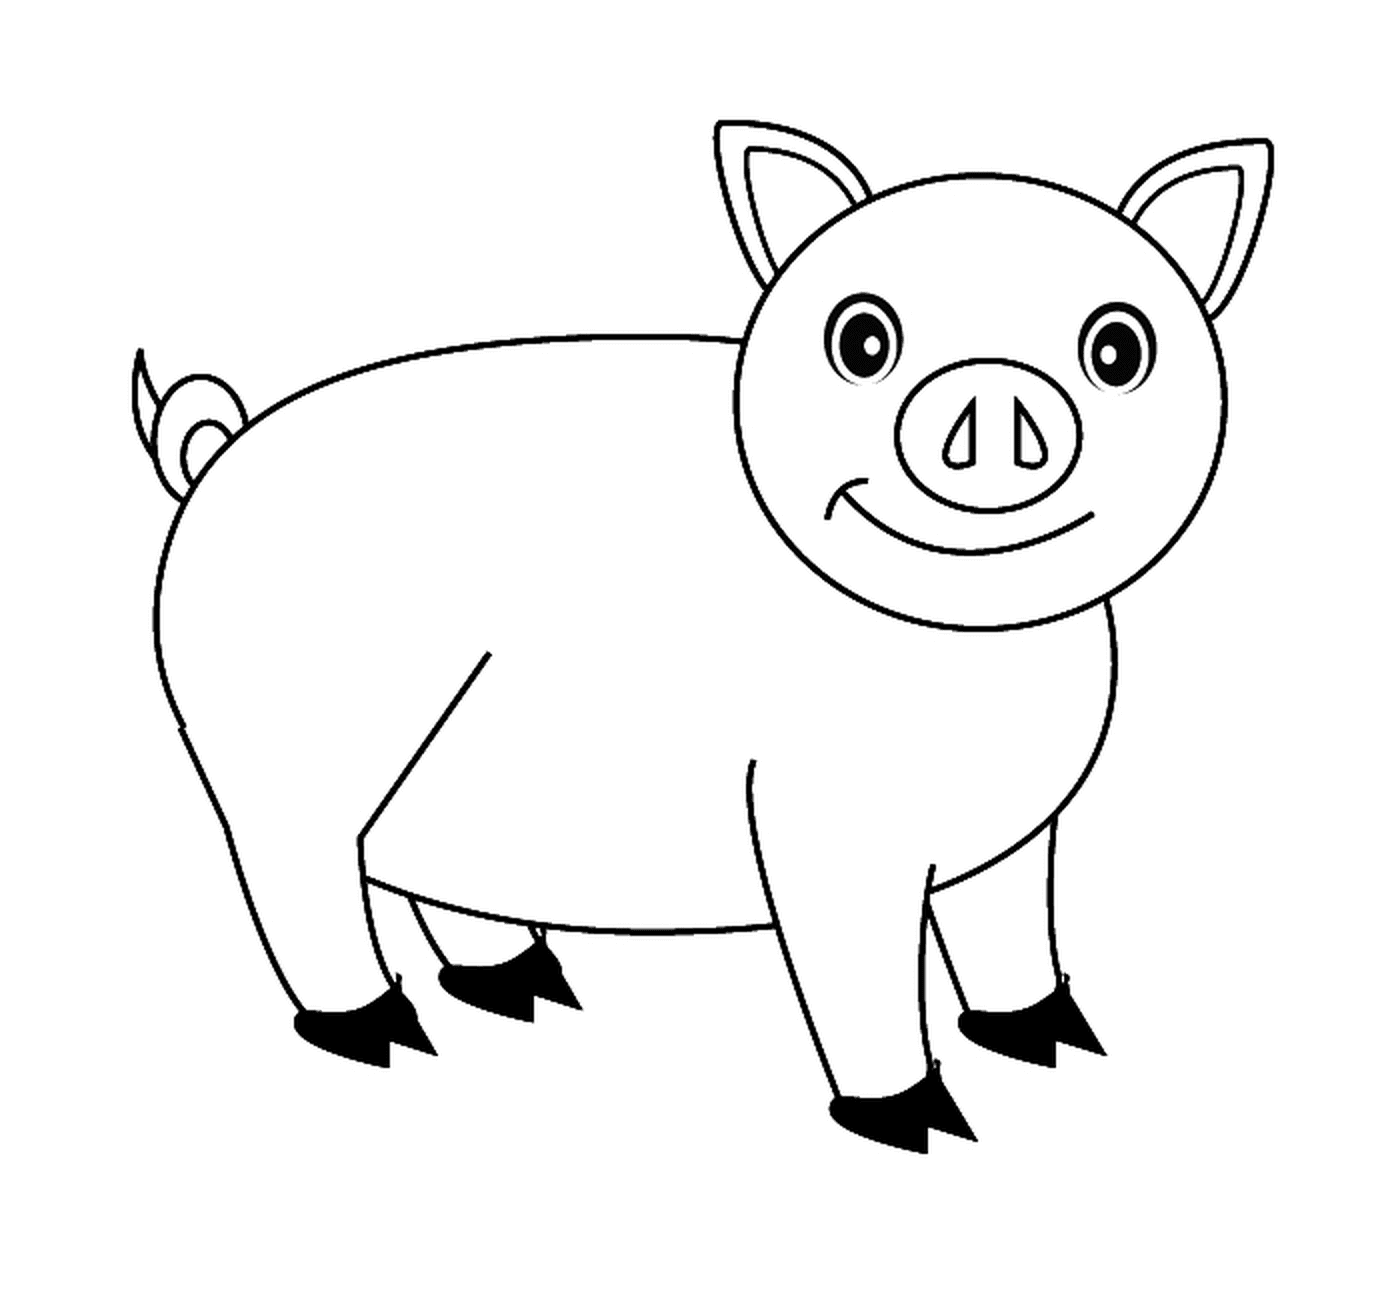  可爱的猪猪 